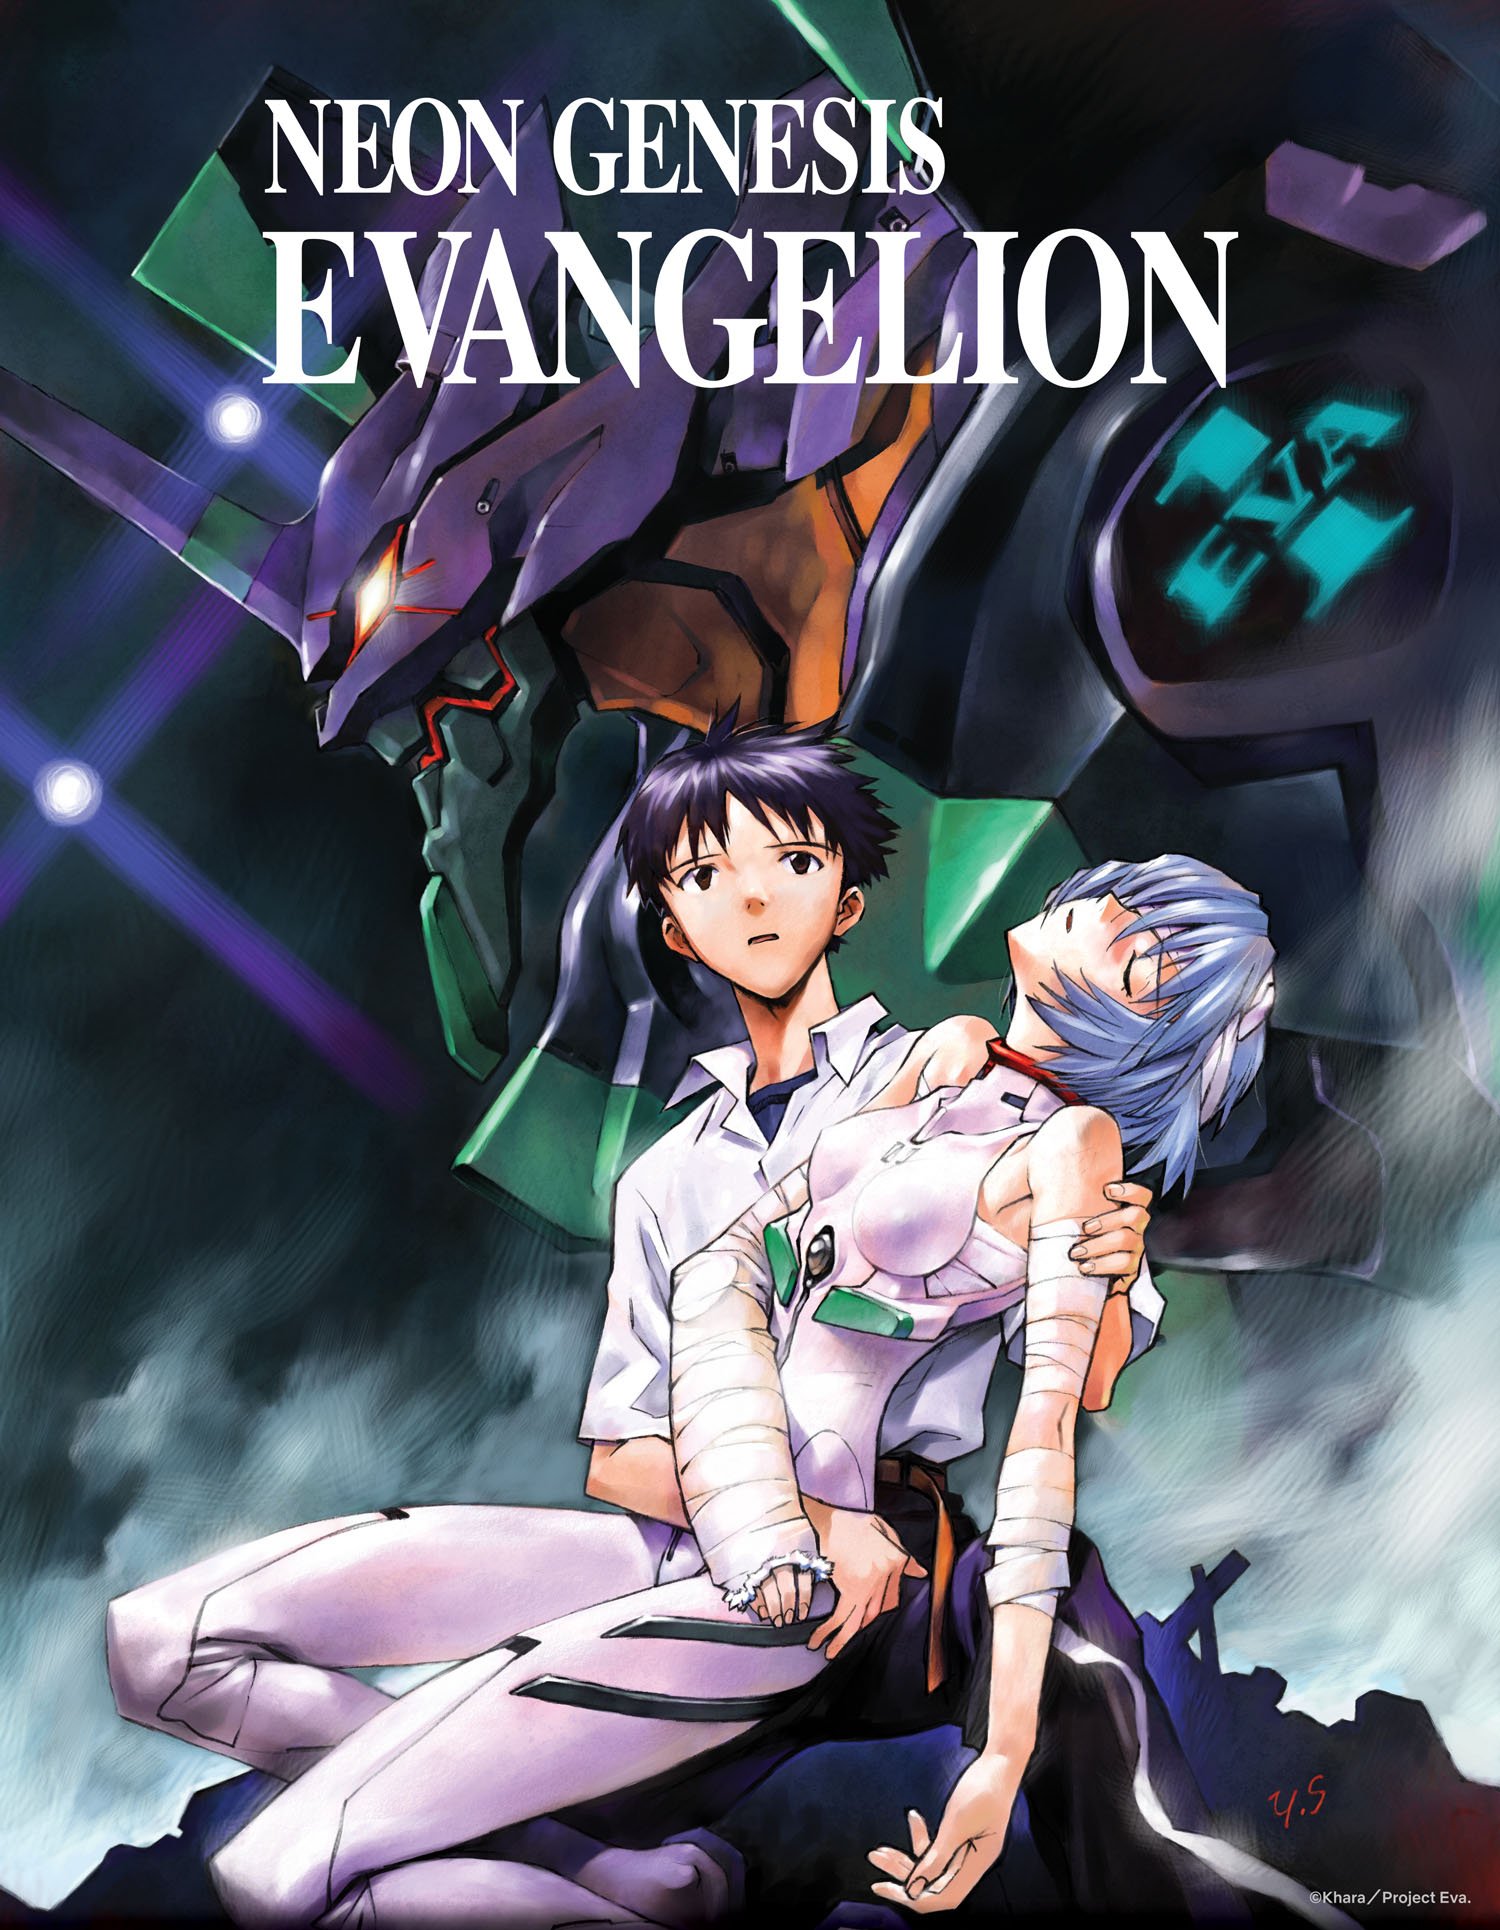 Neon Genesis Evangelion, Evangelion: Death(true)2, and The End of